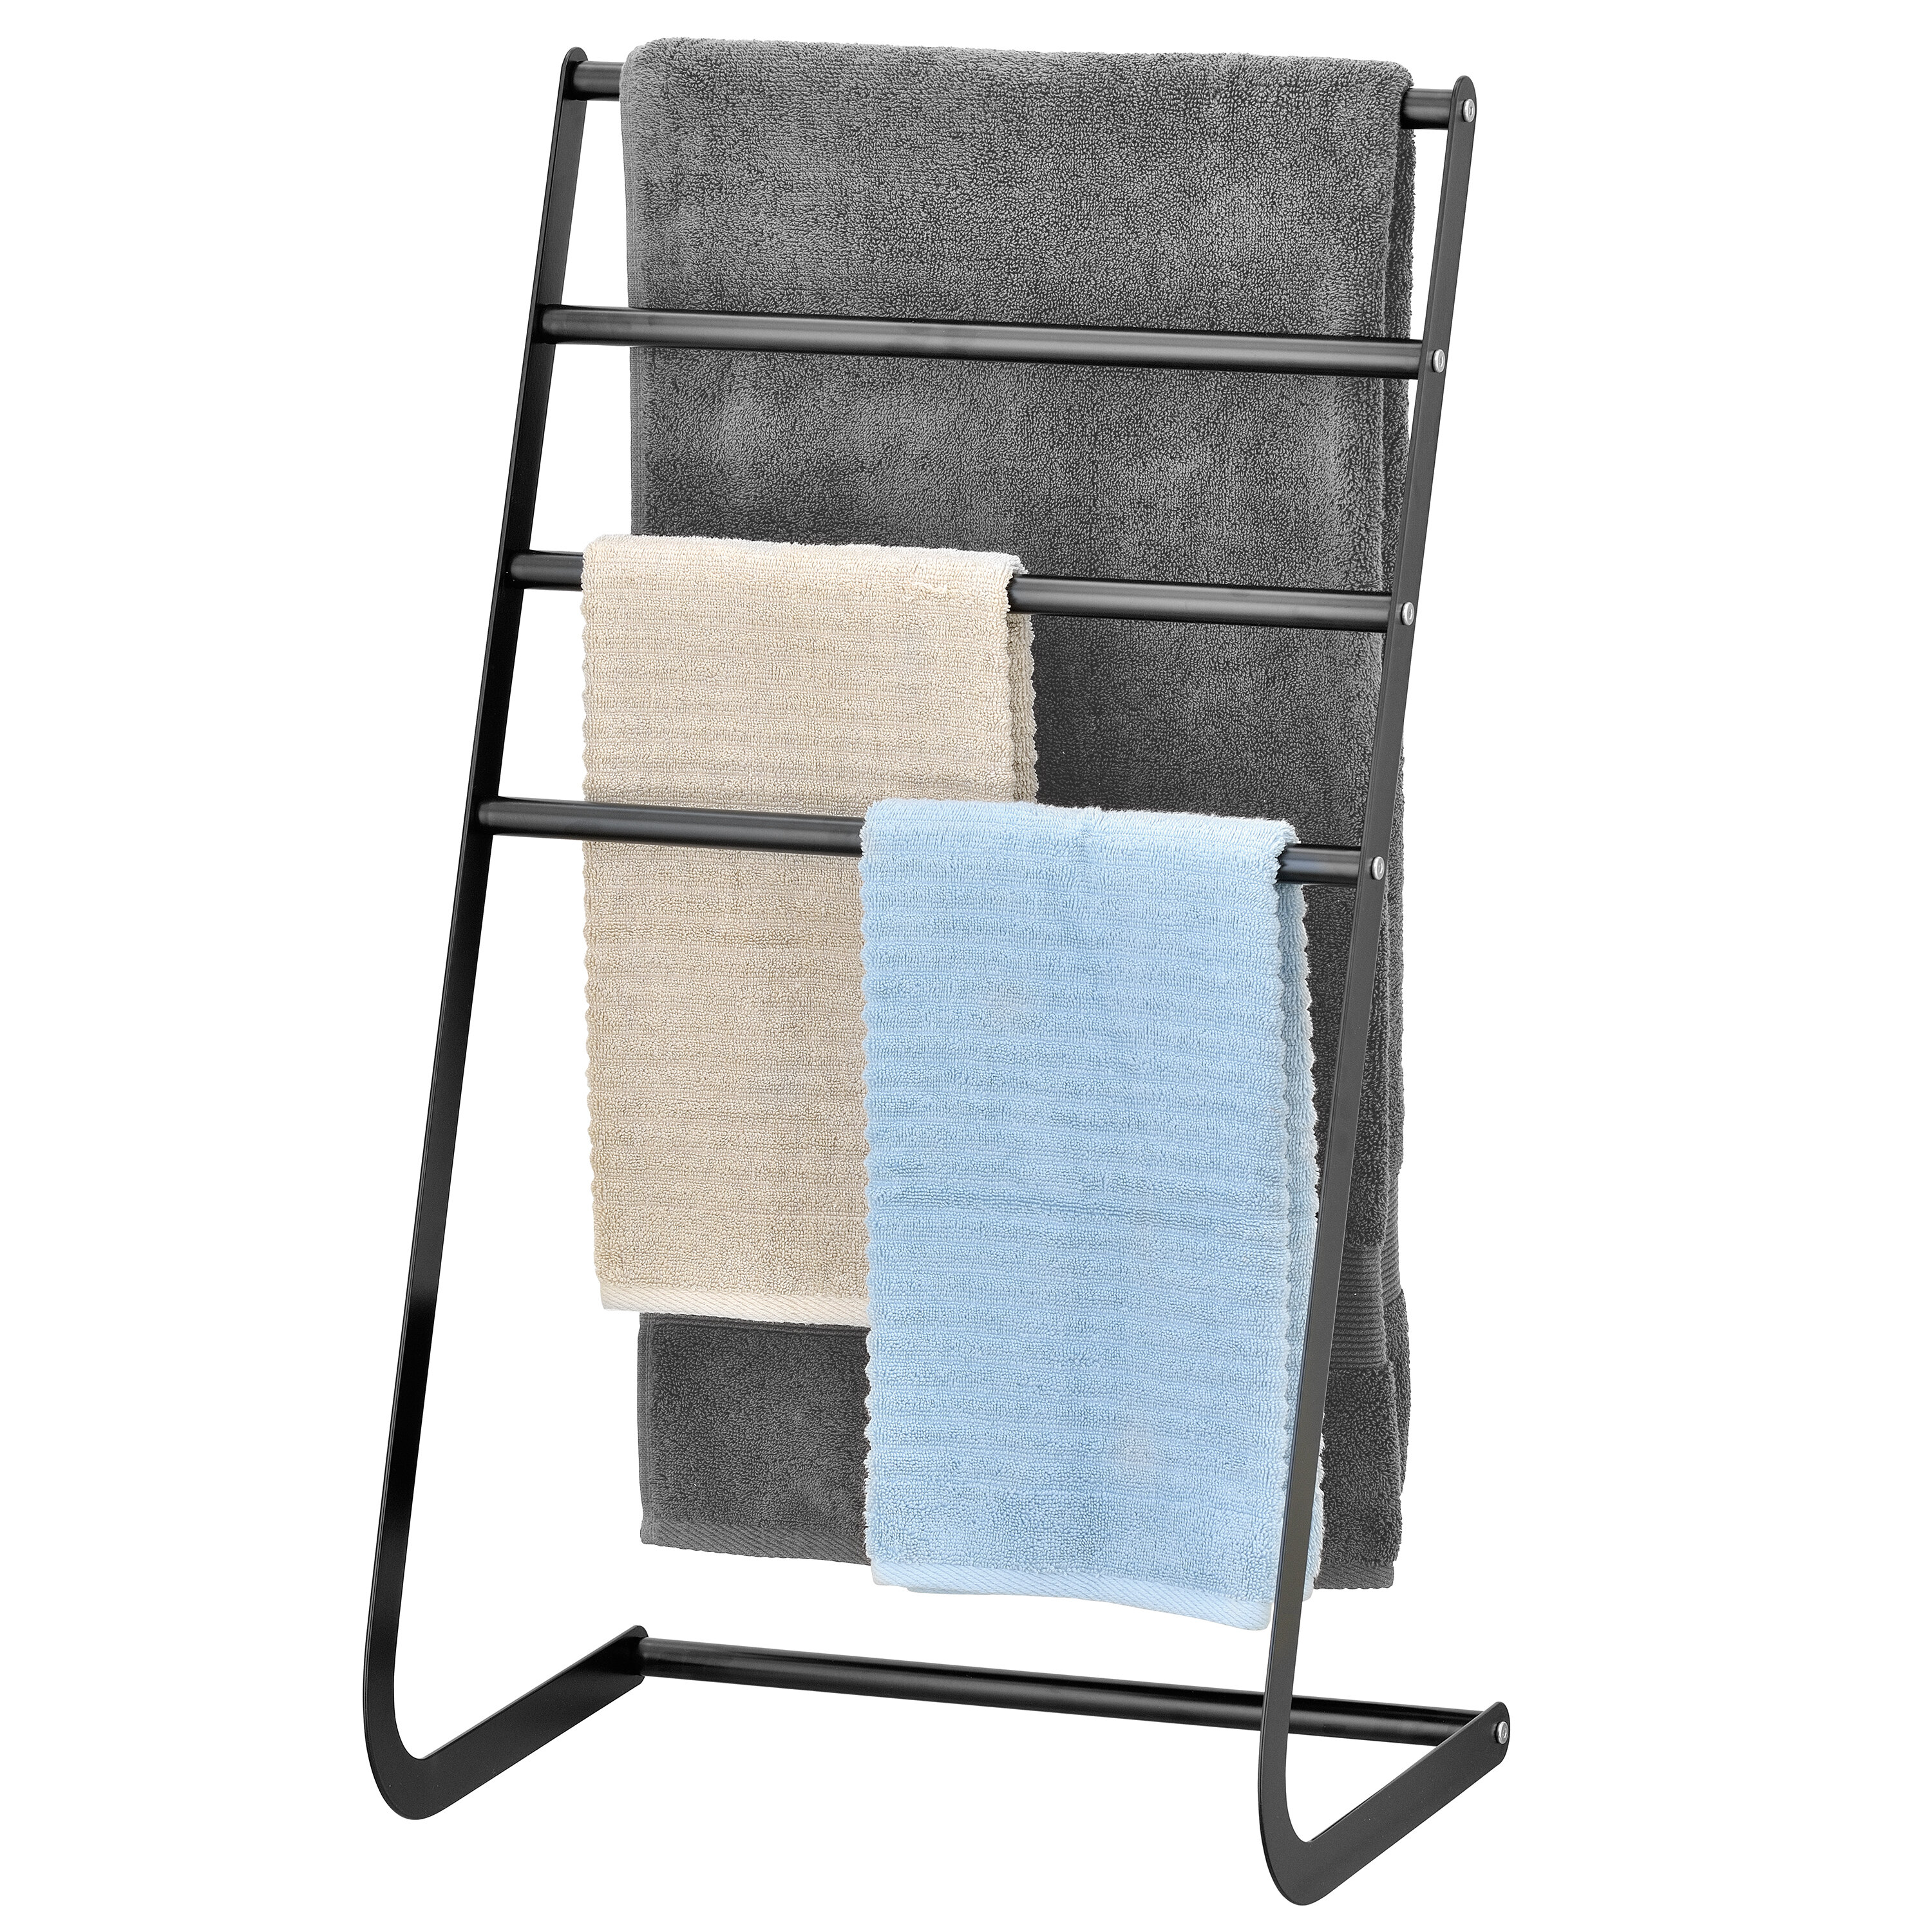 Towel Rack Free Standing Towel Rack Household Storage Rack Finishing Double Rack Multifunctional Metal Bathroom Rack Towel Rack Rack